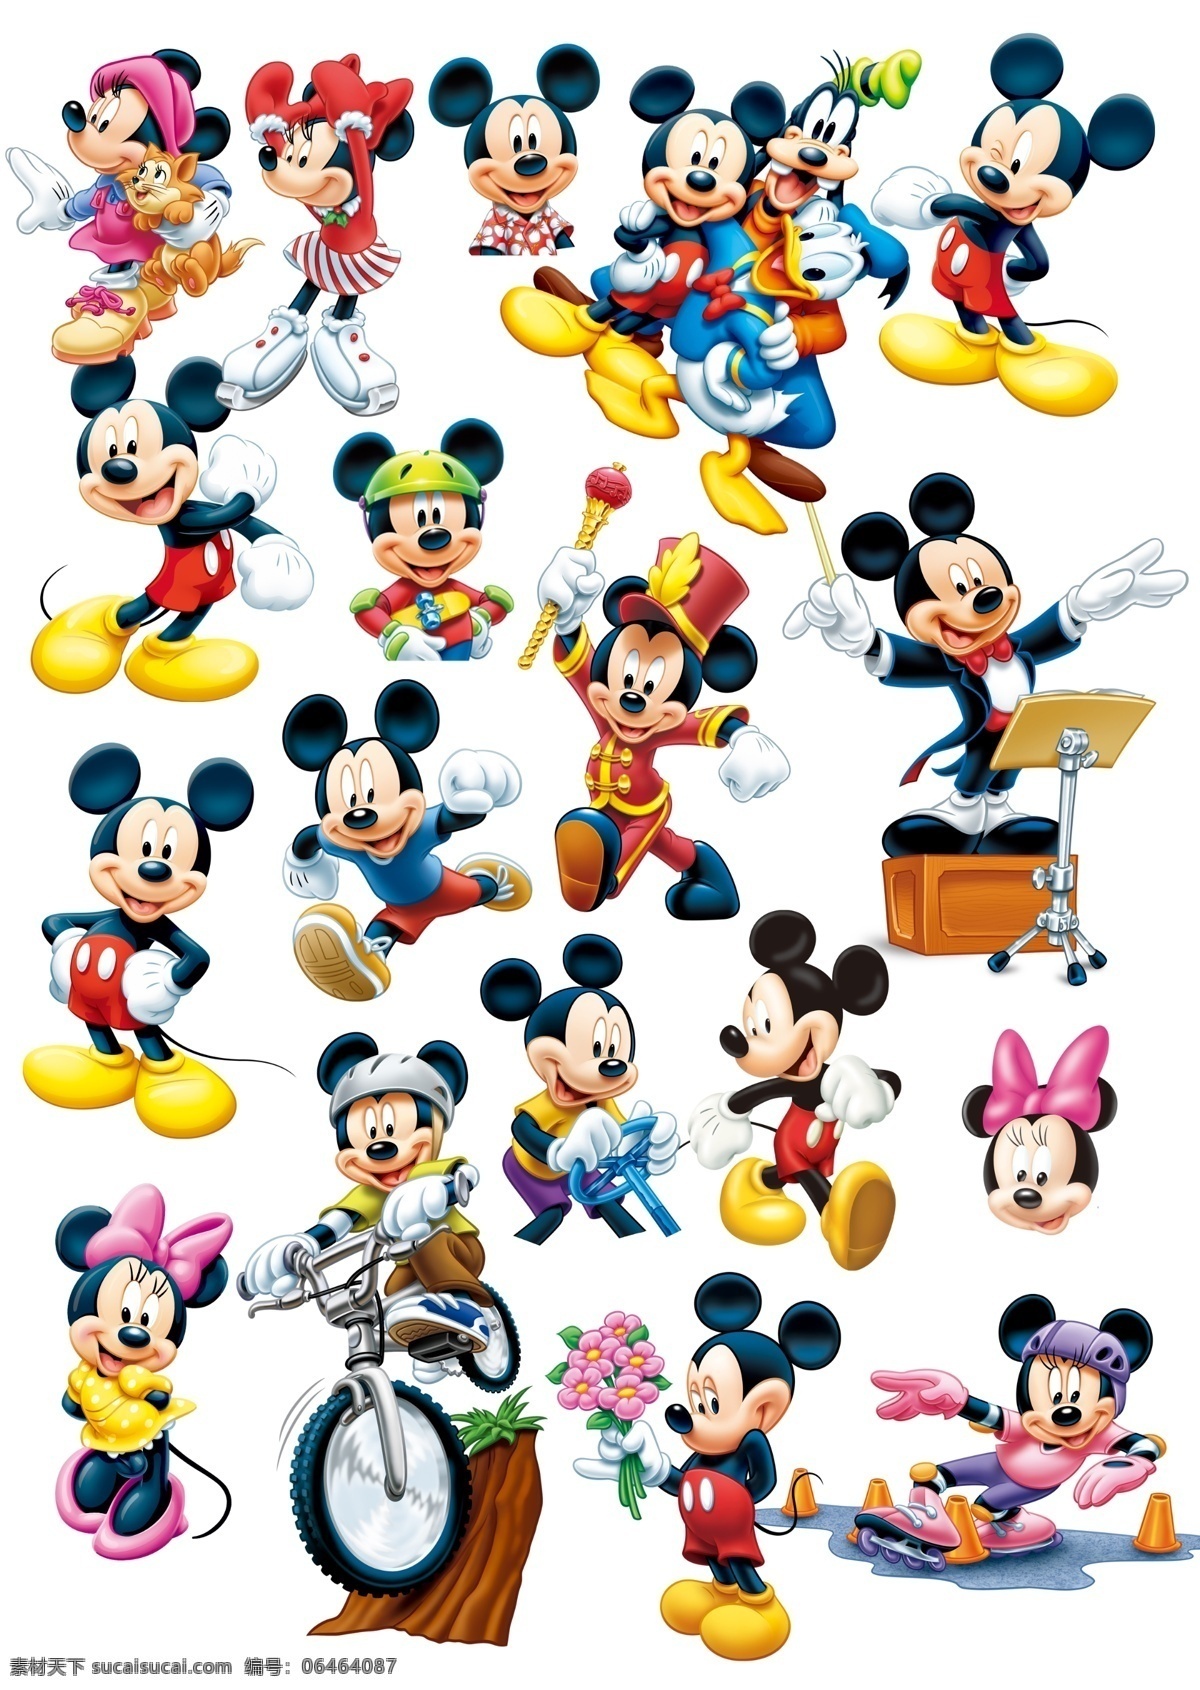 超 精美 米奇 老鼠 新年素材 米奇老鼠 卡通 漫画 迪士尼 高清晰 psd素材 源文件库